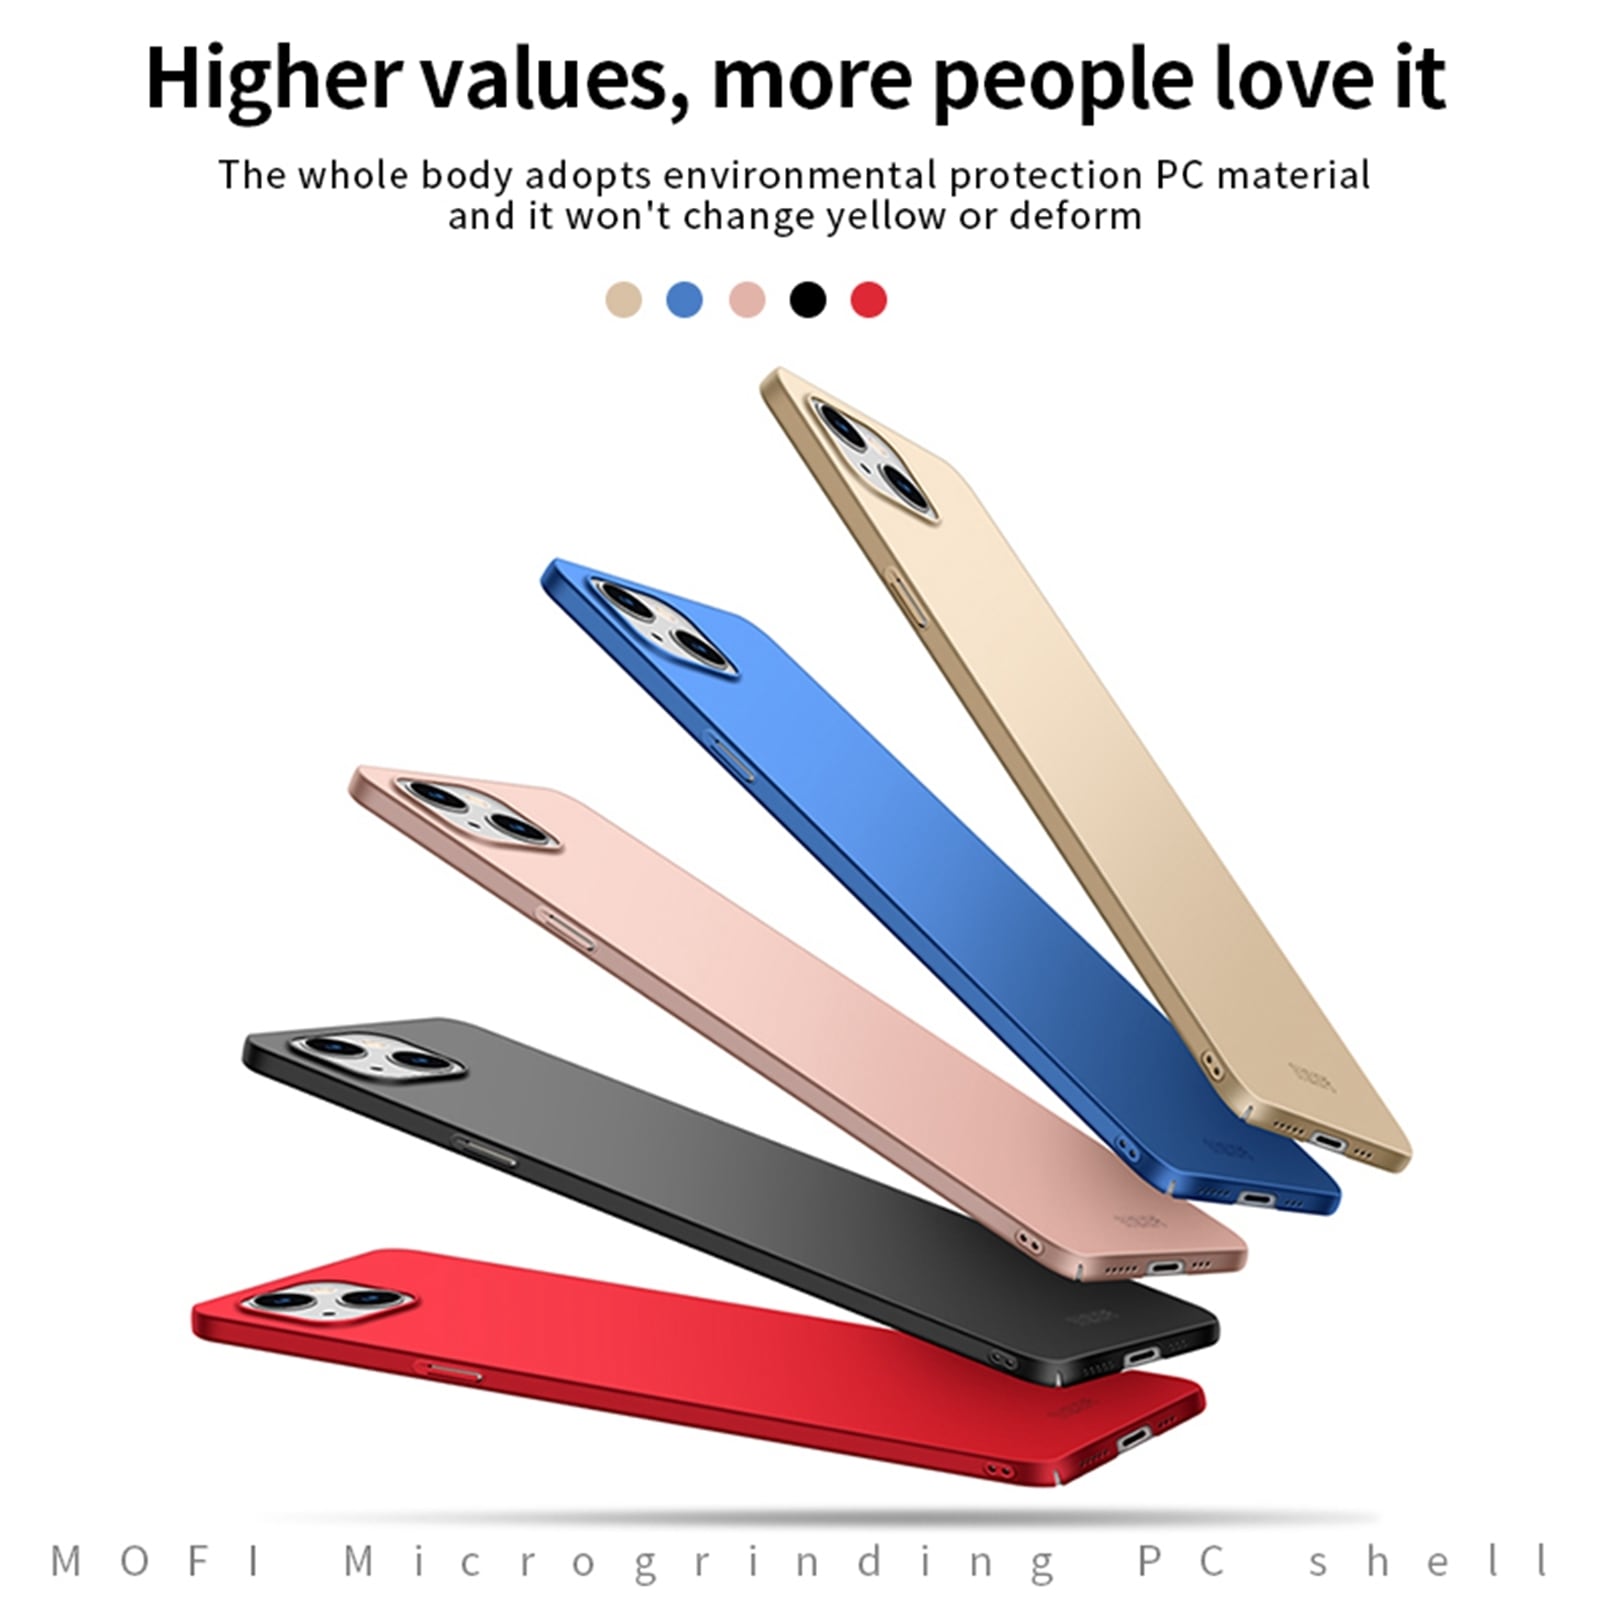 Erittäin ohut MOFI-kuori iPhone 13 - Rose Gold